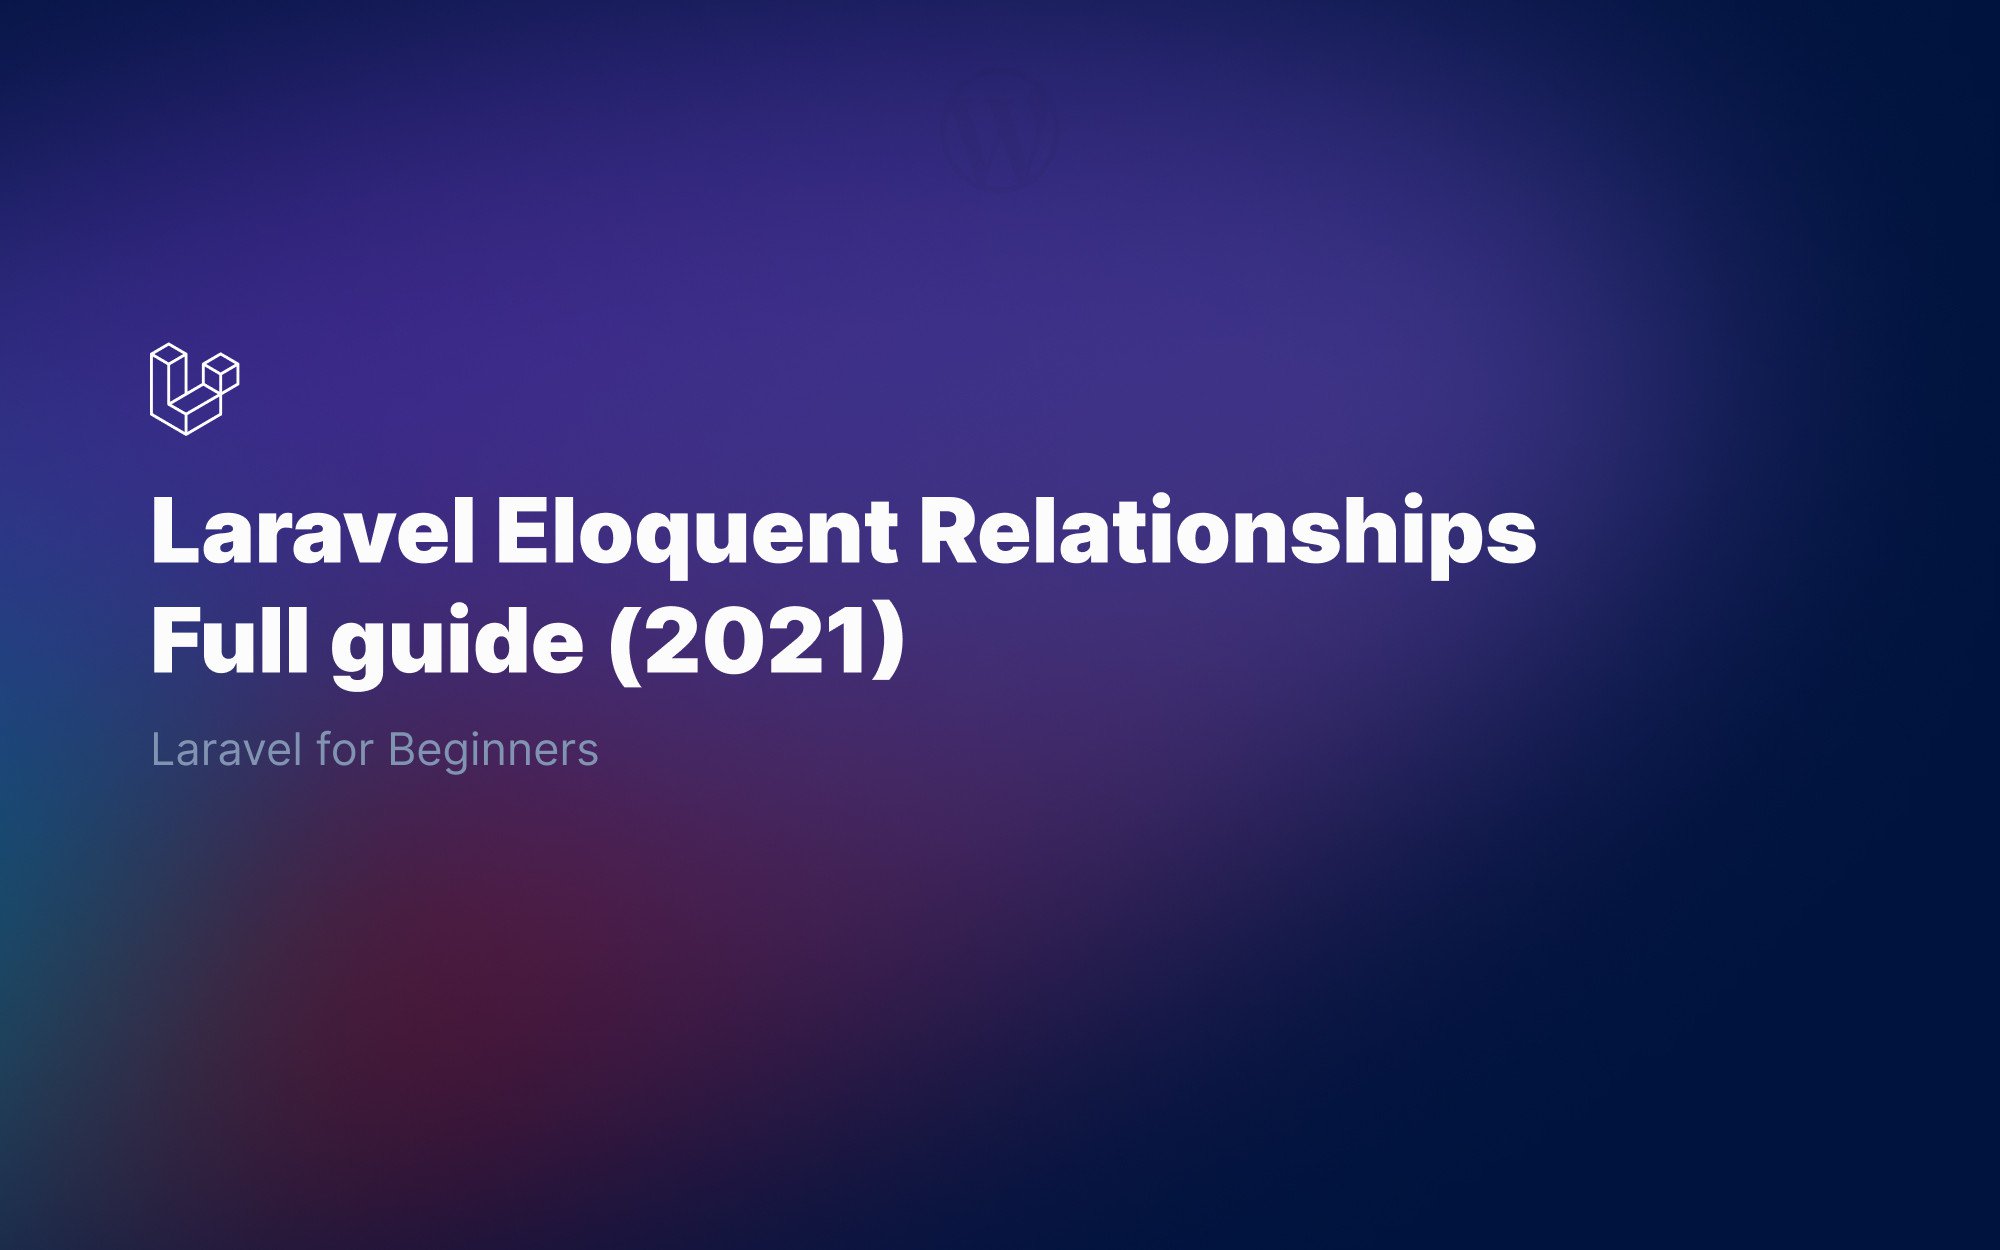 Laravel Eloquent relationships for beginners - Full 2022 Guide